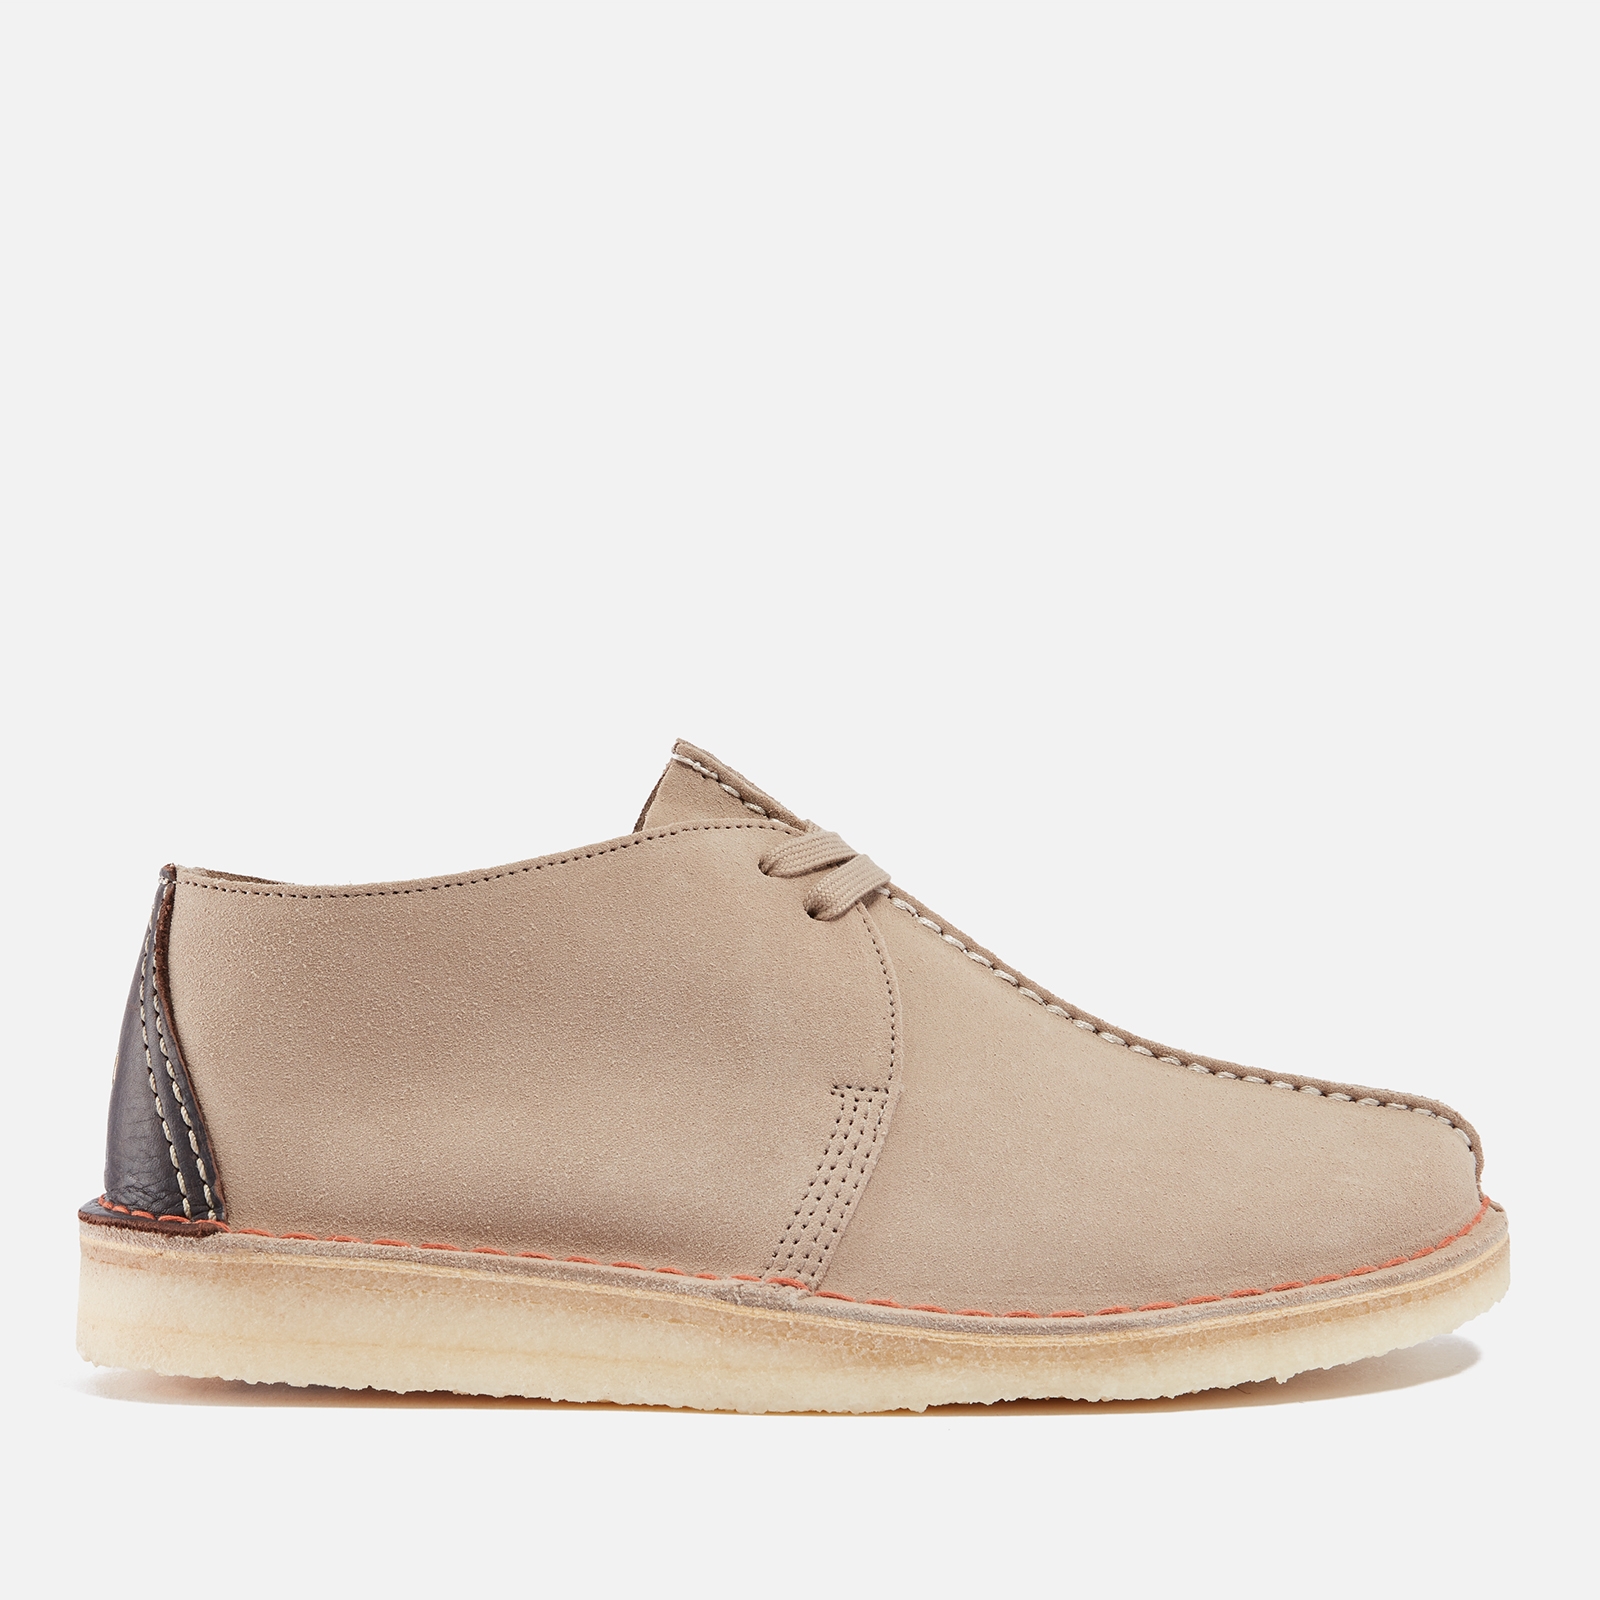 Clarks Originals Men’s Desert Trek Suede Shoes - UK 10